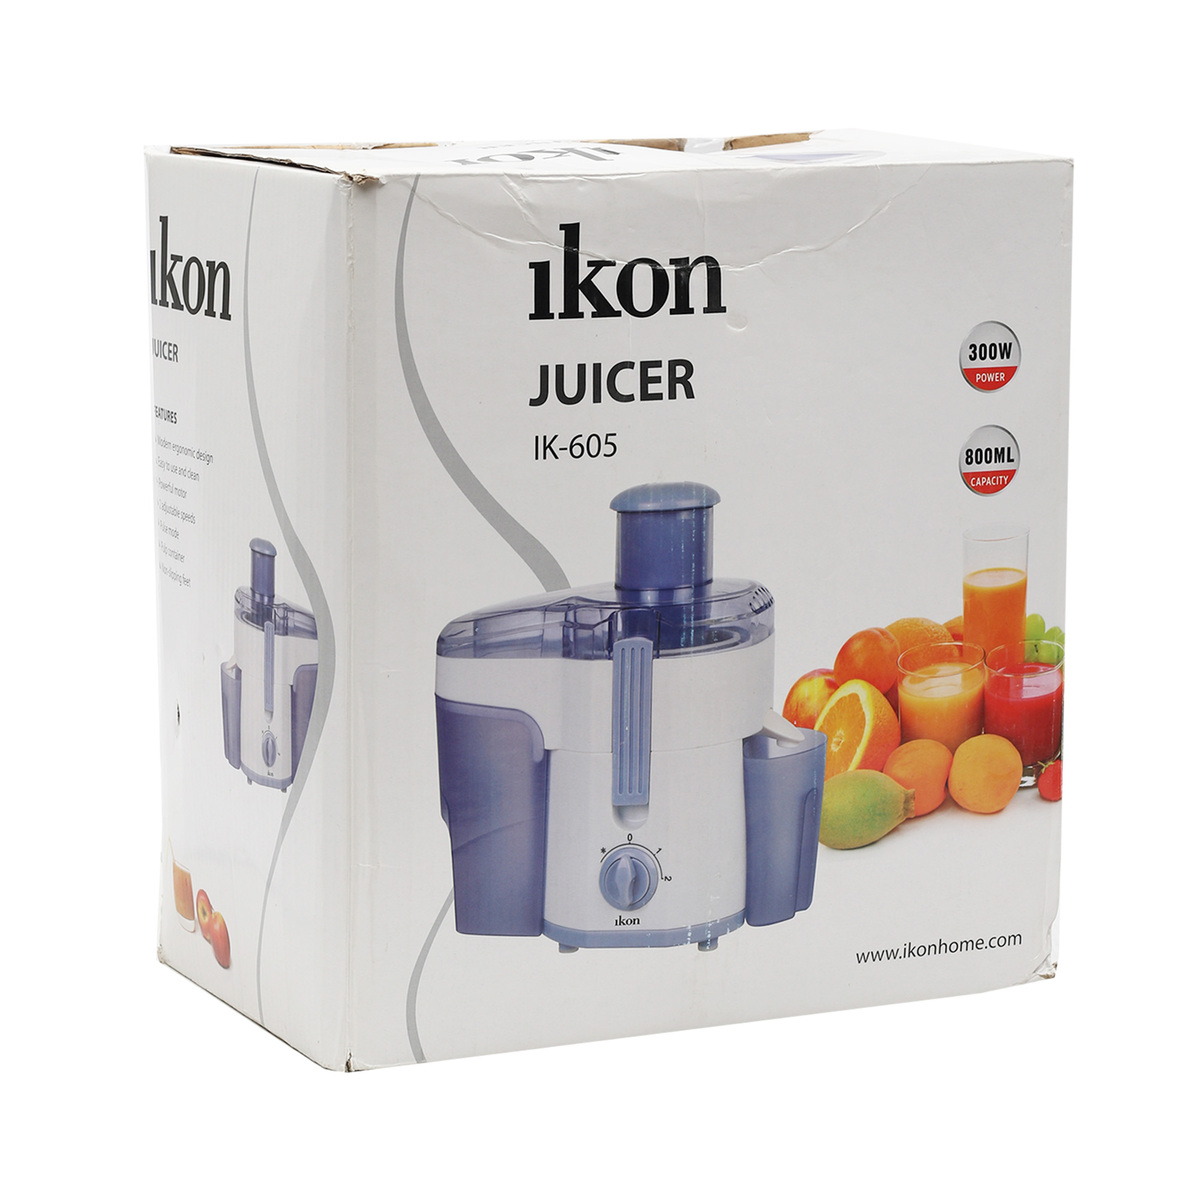 Ikon Fresh Juice Maker IK-605 300W